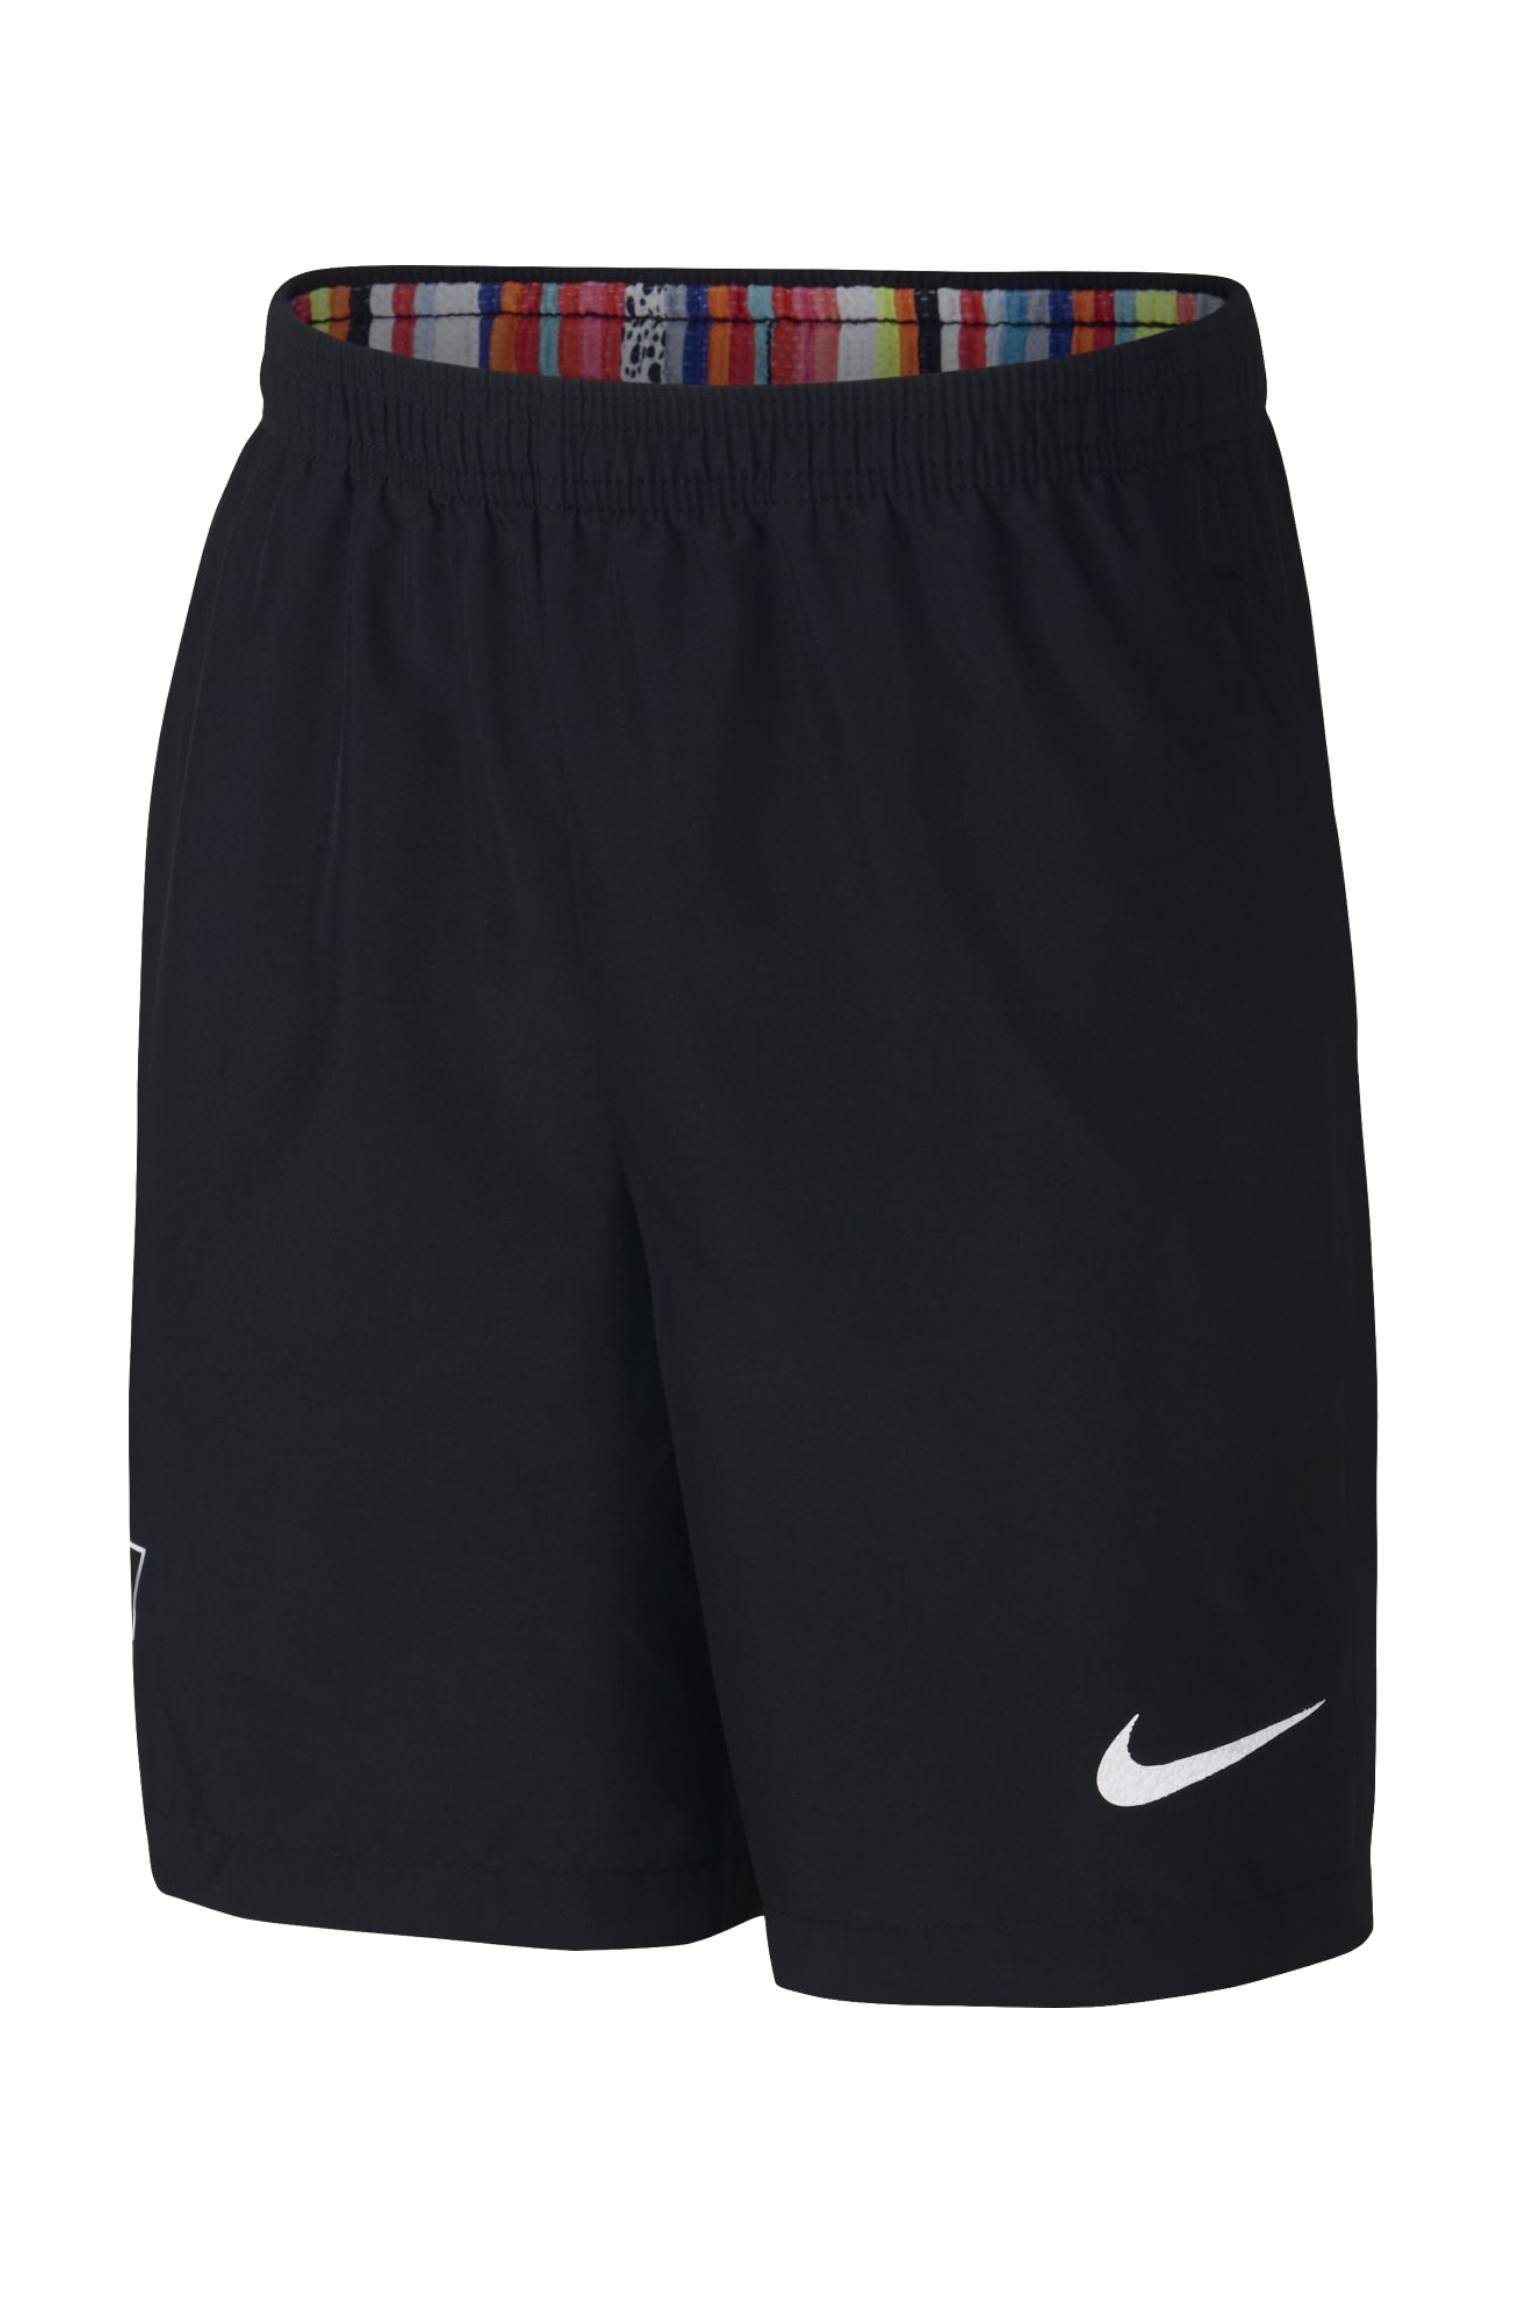 Shorts Nike Mercurial Dry Junior | R 